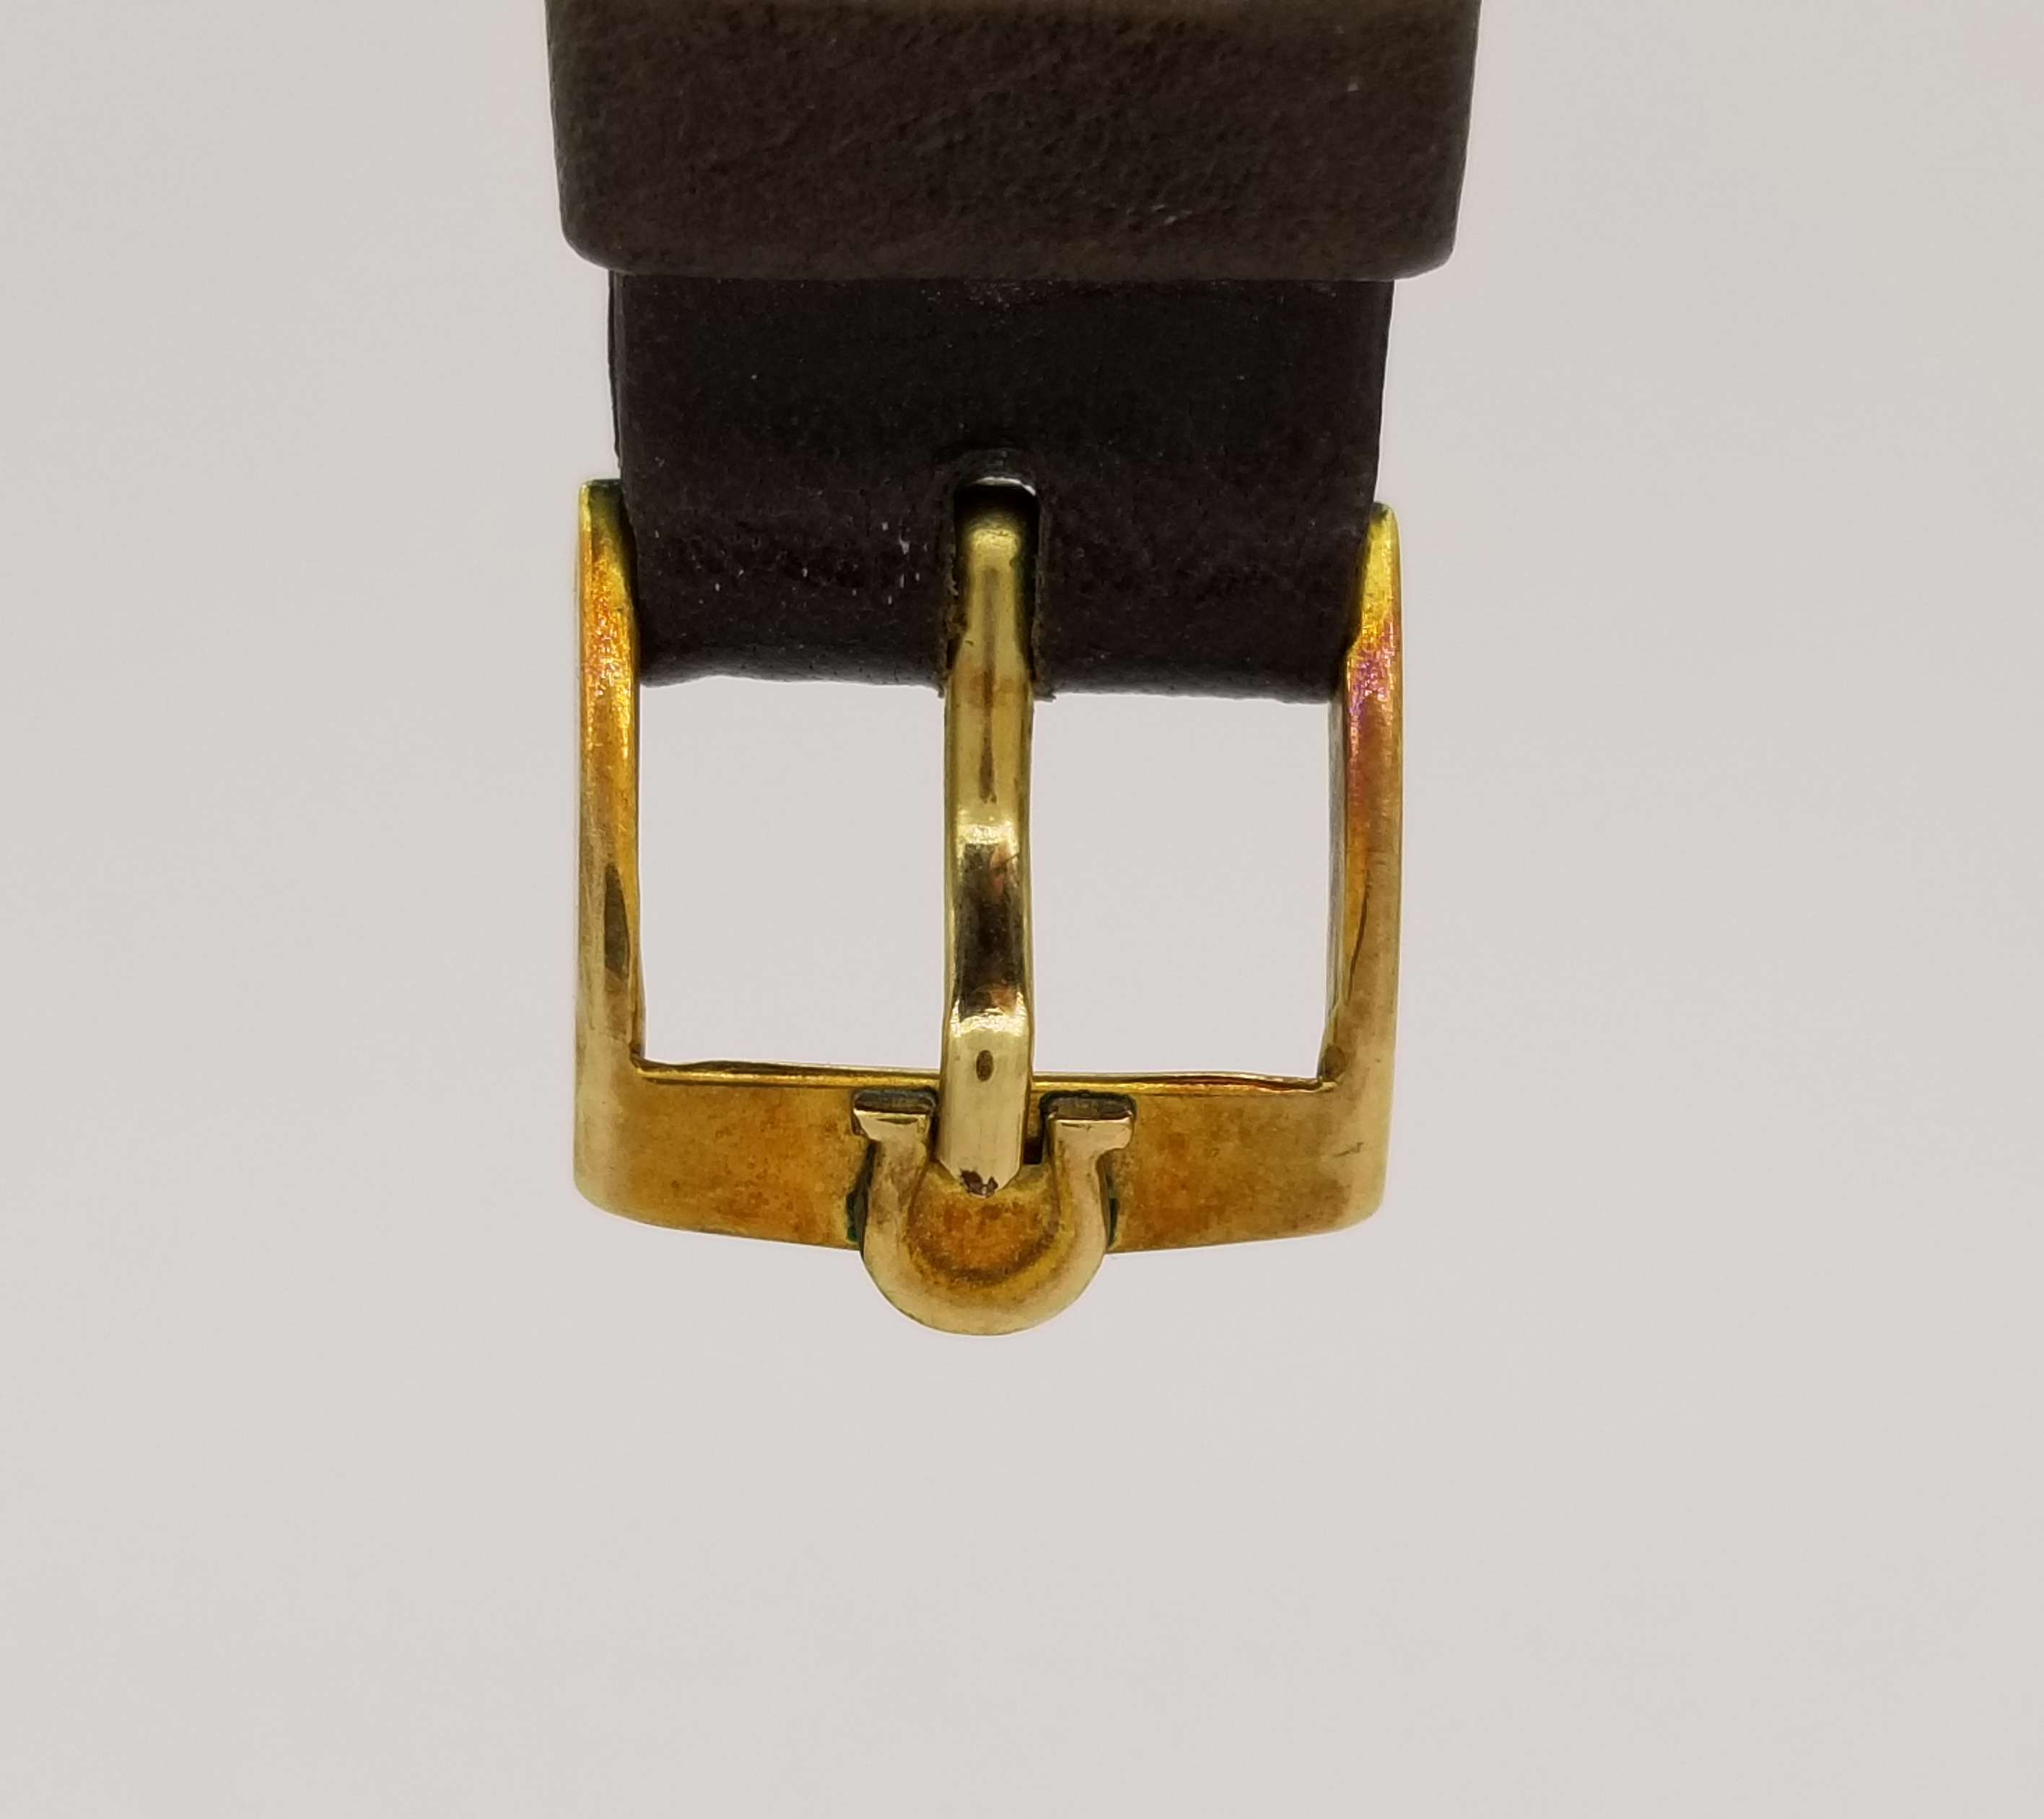 Vintage 14K Gold Omega Watch - Image 7 of 8